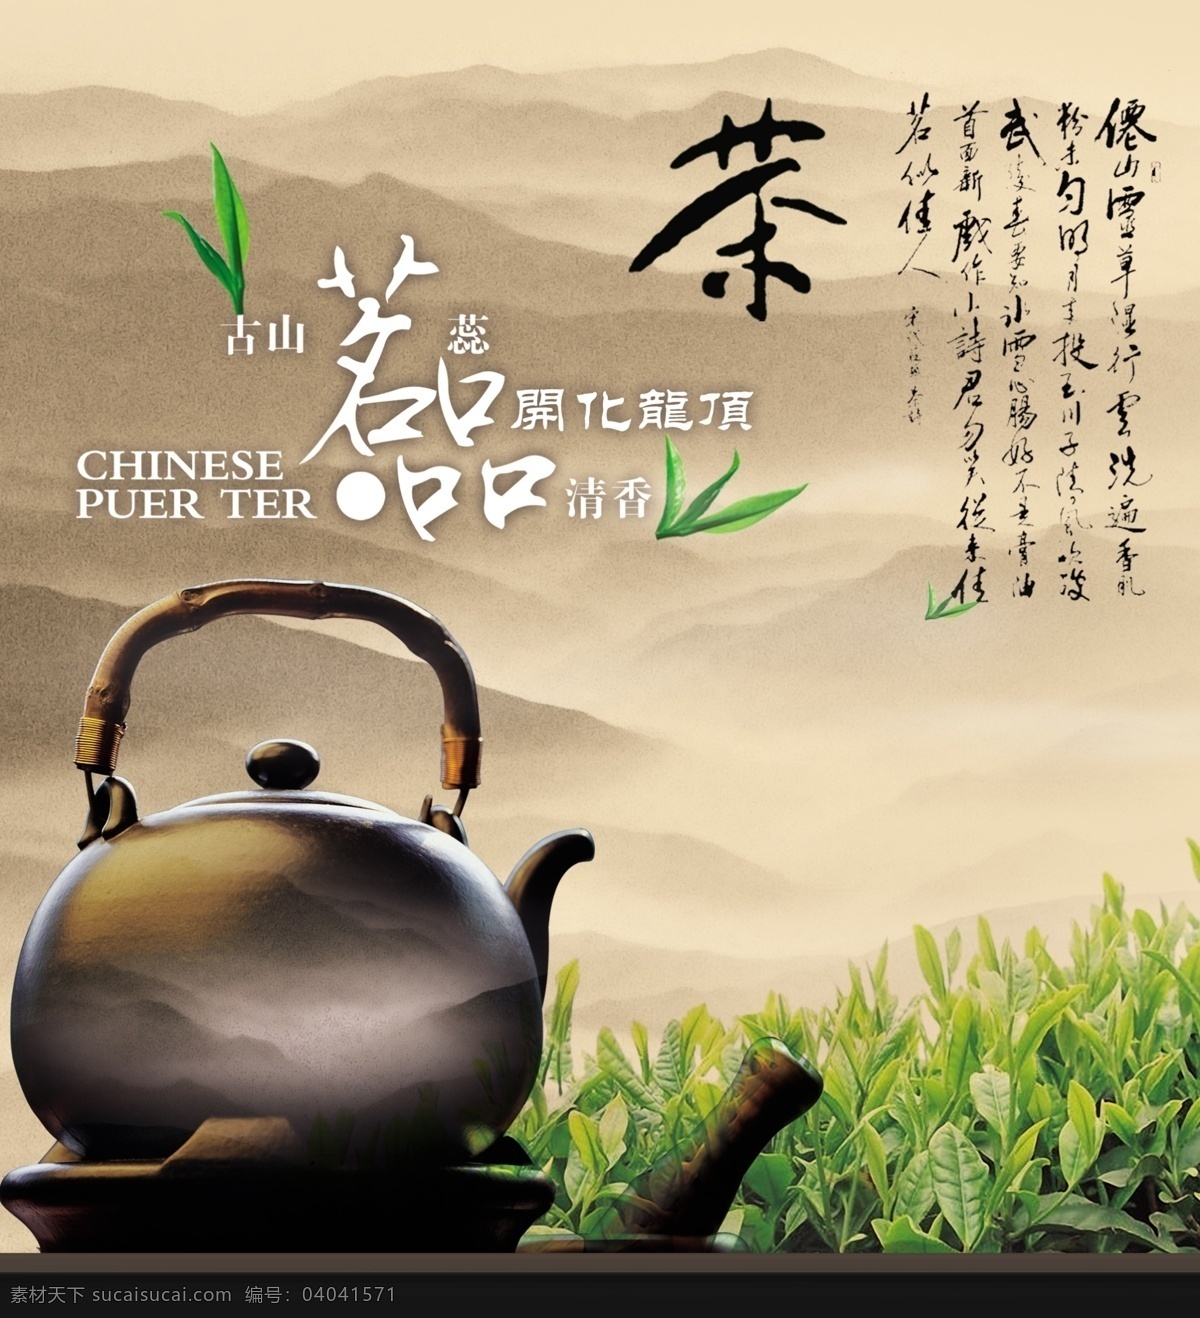 包装 茶 茶壶 茶画册 画册 茶具 古风 古老 墨迹 排版 模板下载 编排 中国风 优雅 暗淡 纹理 茶趣 饮用